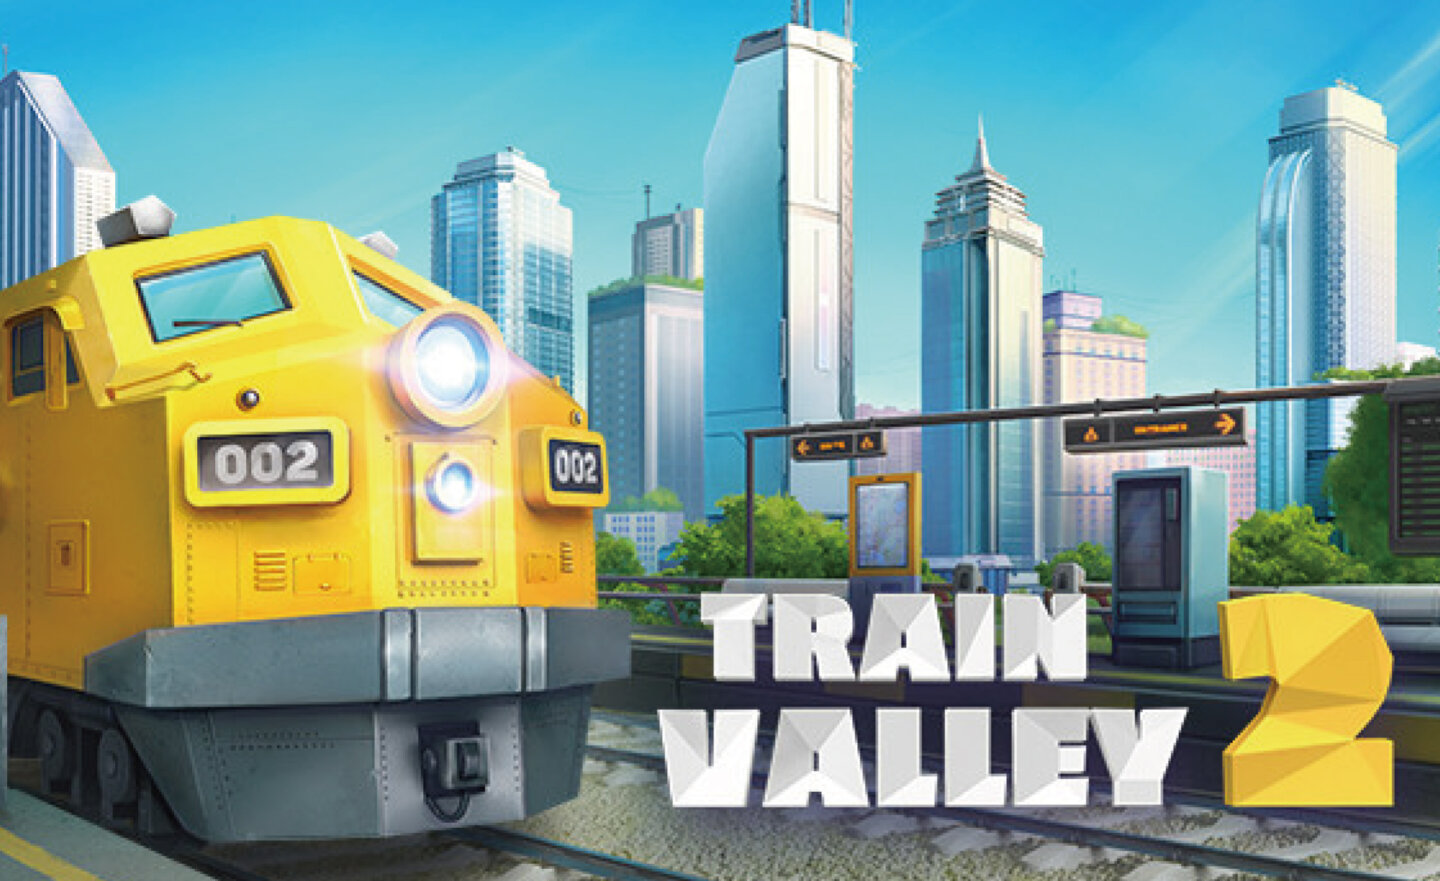 【限時免費】鐵路建造模擬遊戲《Train Valley 2》放送中，2023 年 7 月 20 日晚上 11:00 截止